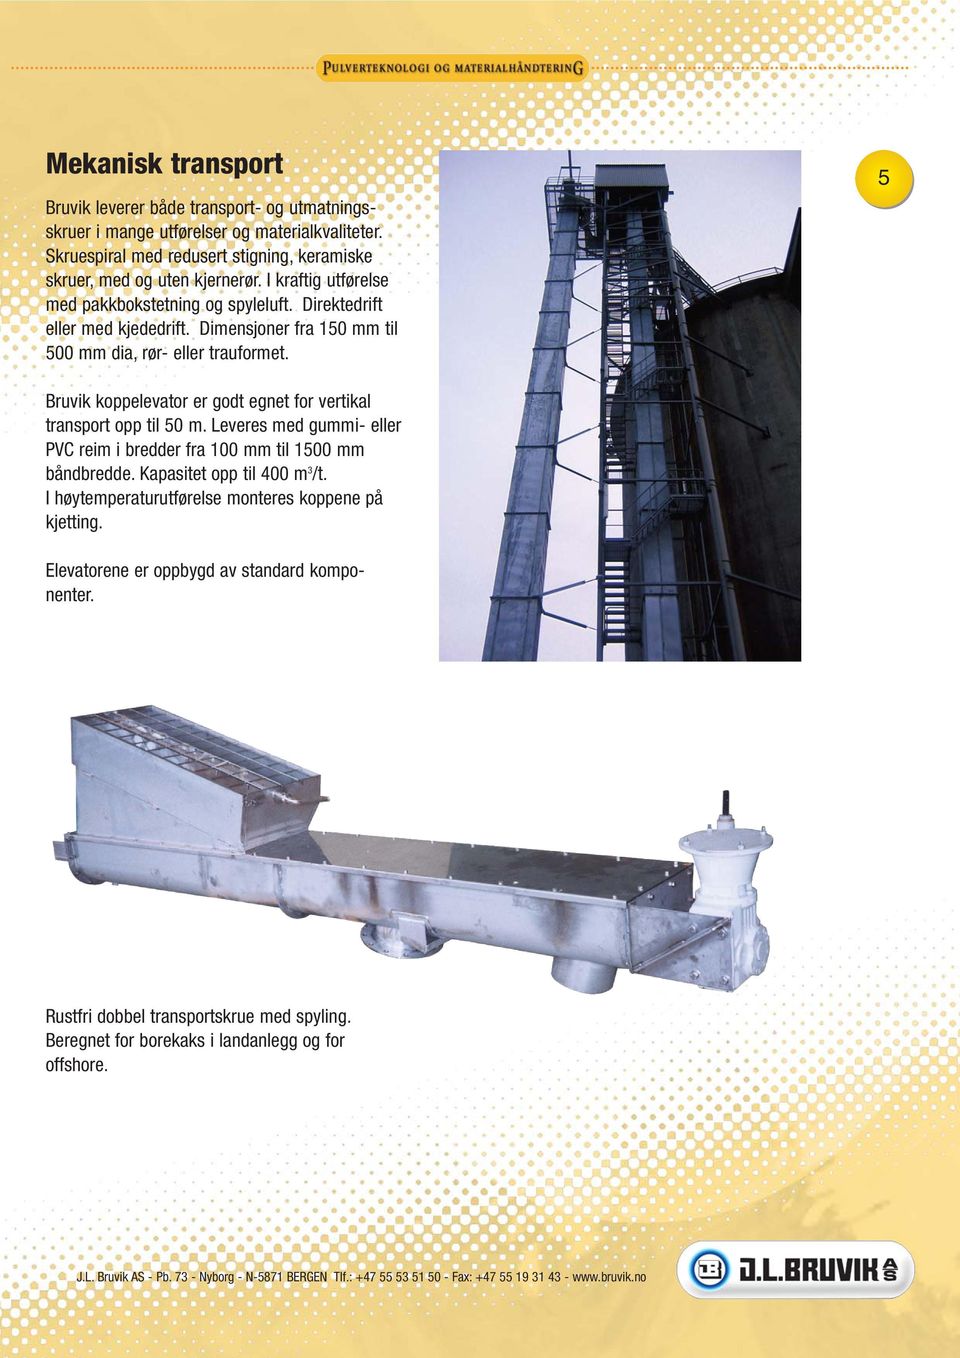 Dimensjoner fra 150 mm til 500 mm dia, rør- eller trauformet. 5 Bruvik koppelevator er godt egnet for vertikal transport opp til 50 m.